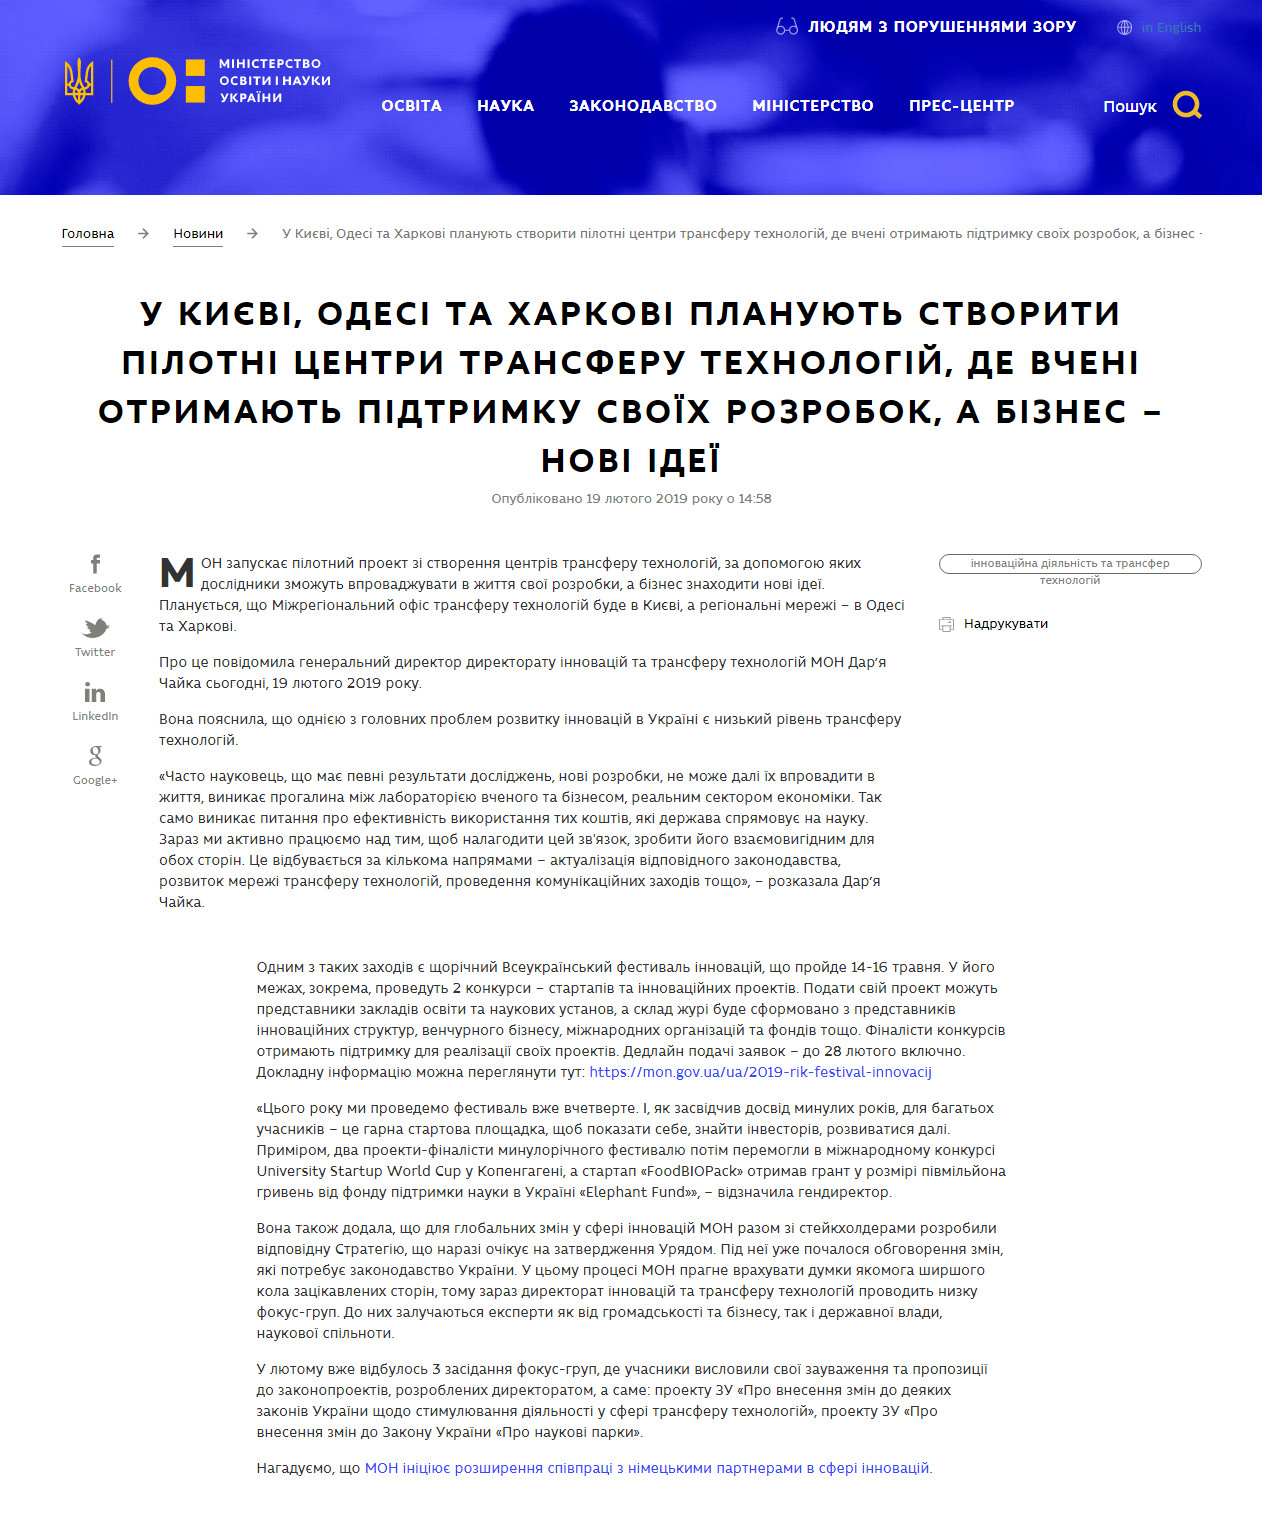 https://mon.gov.ua/ua/news/u-kiyevi-odesi-ta-harkovi-planuyut-stvoriti-pilotni-centri-transferu-tehnologij-de-vcheni-otrimayut-pidtrimku-svoyih-rozrobok-biznes-novi-ideyi